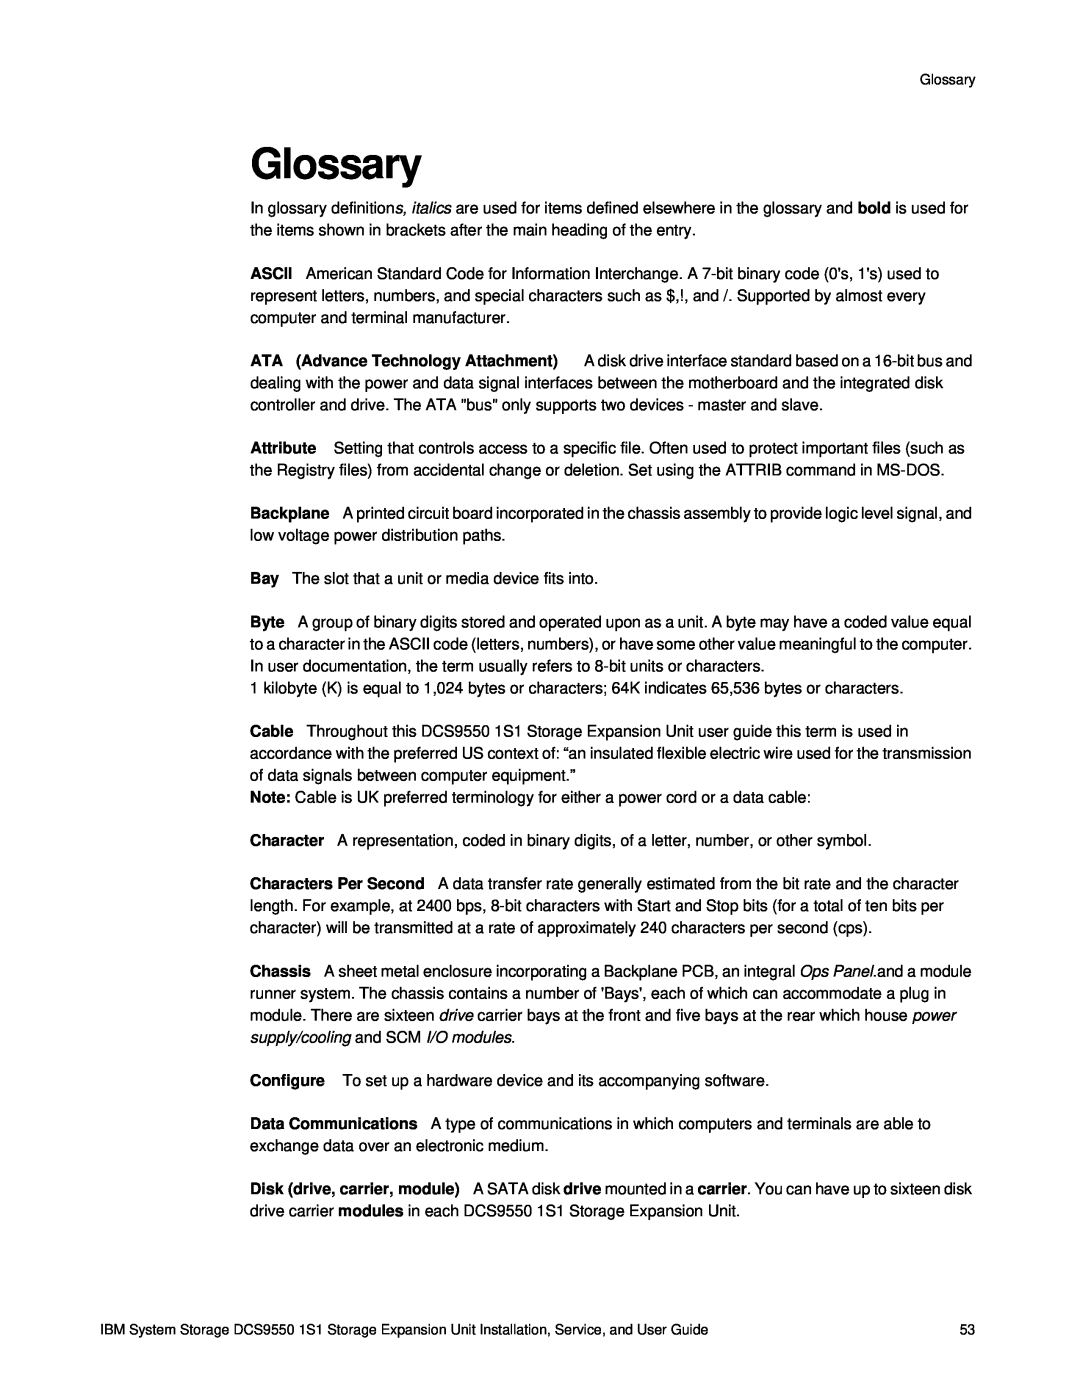 IBM DCS9550 1S1 manual Glossary 